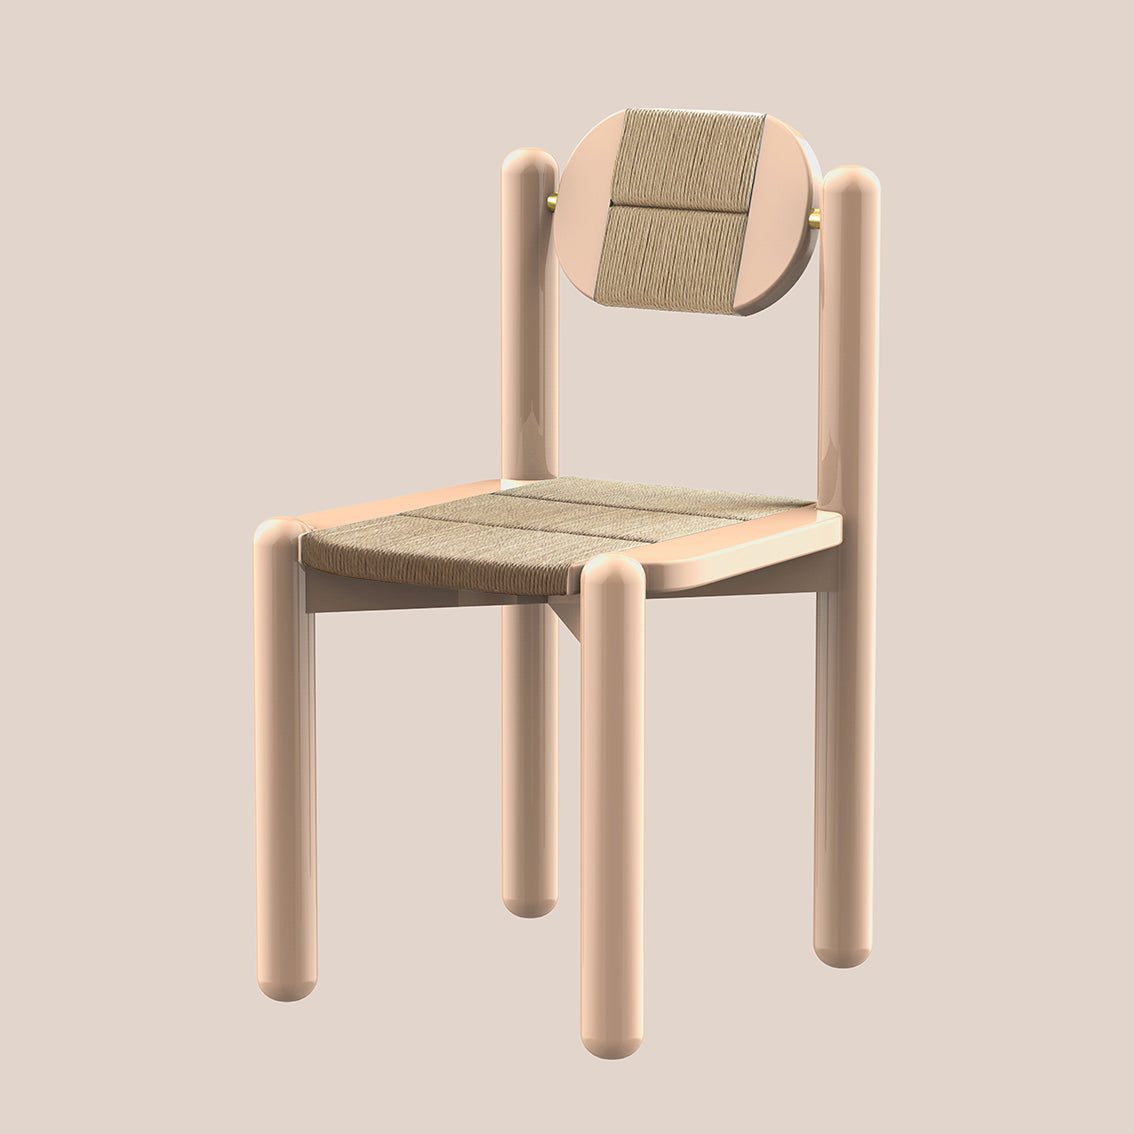 Mirèio, woven chair